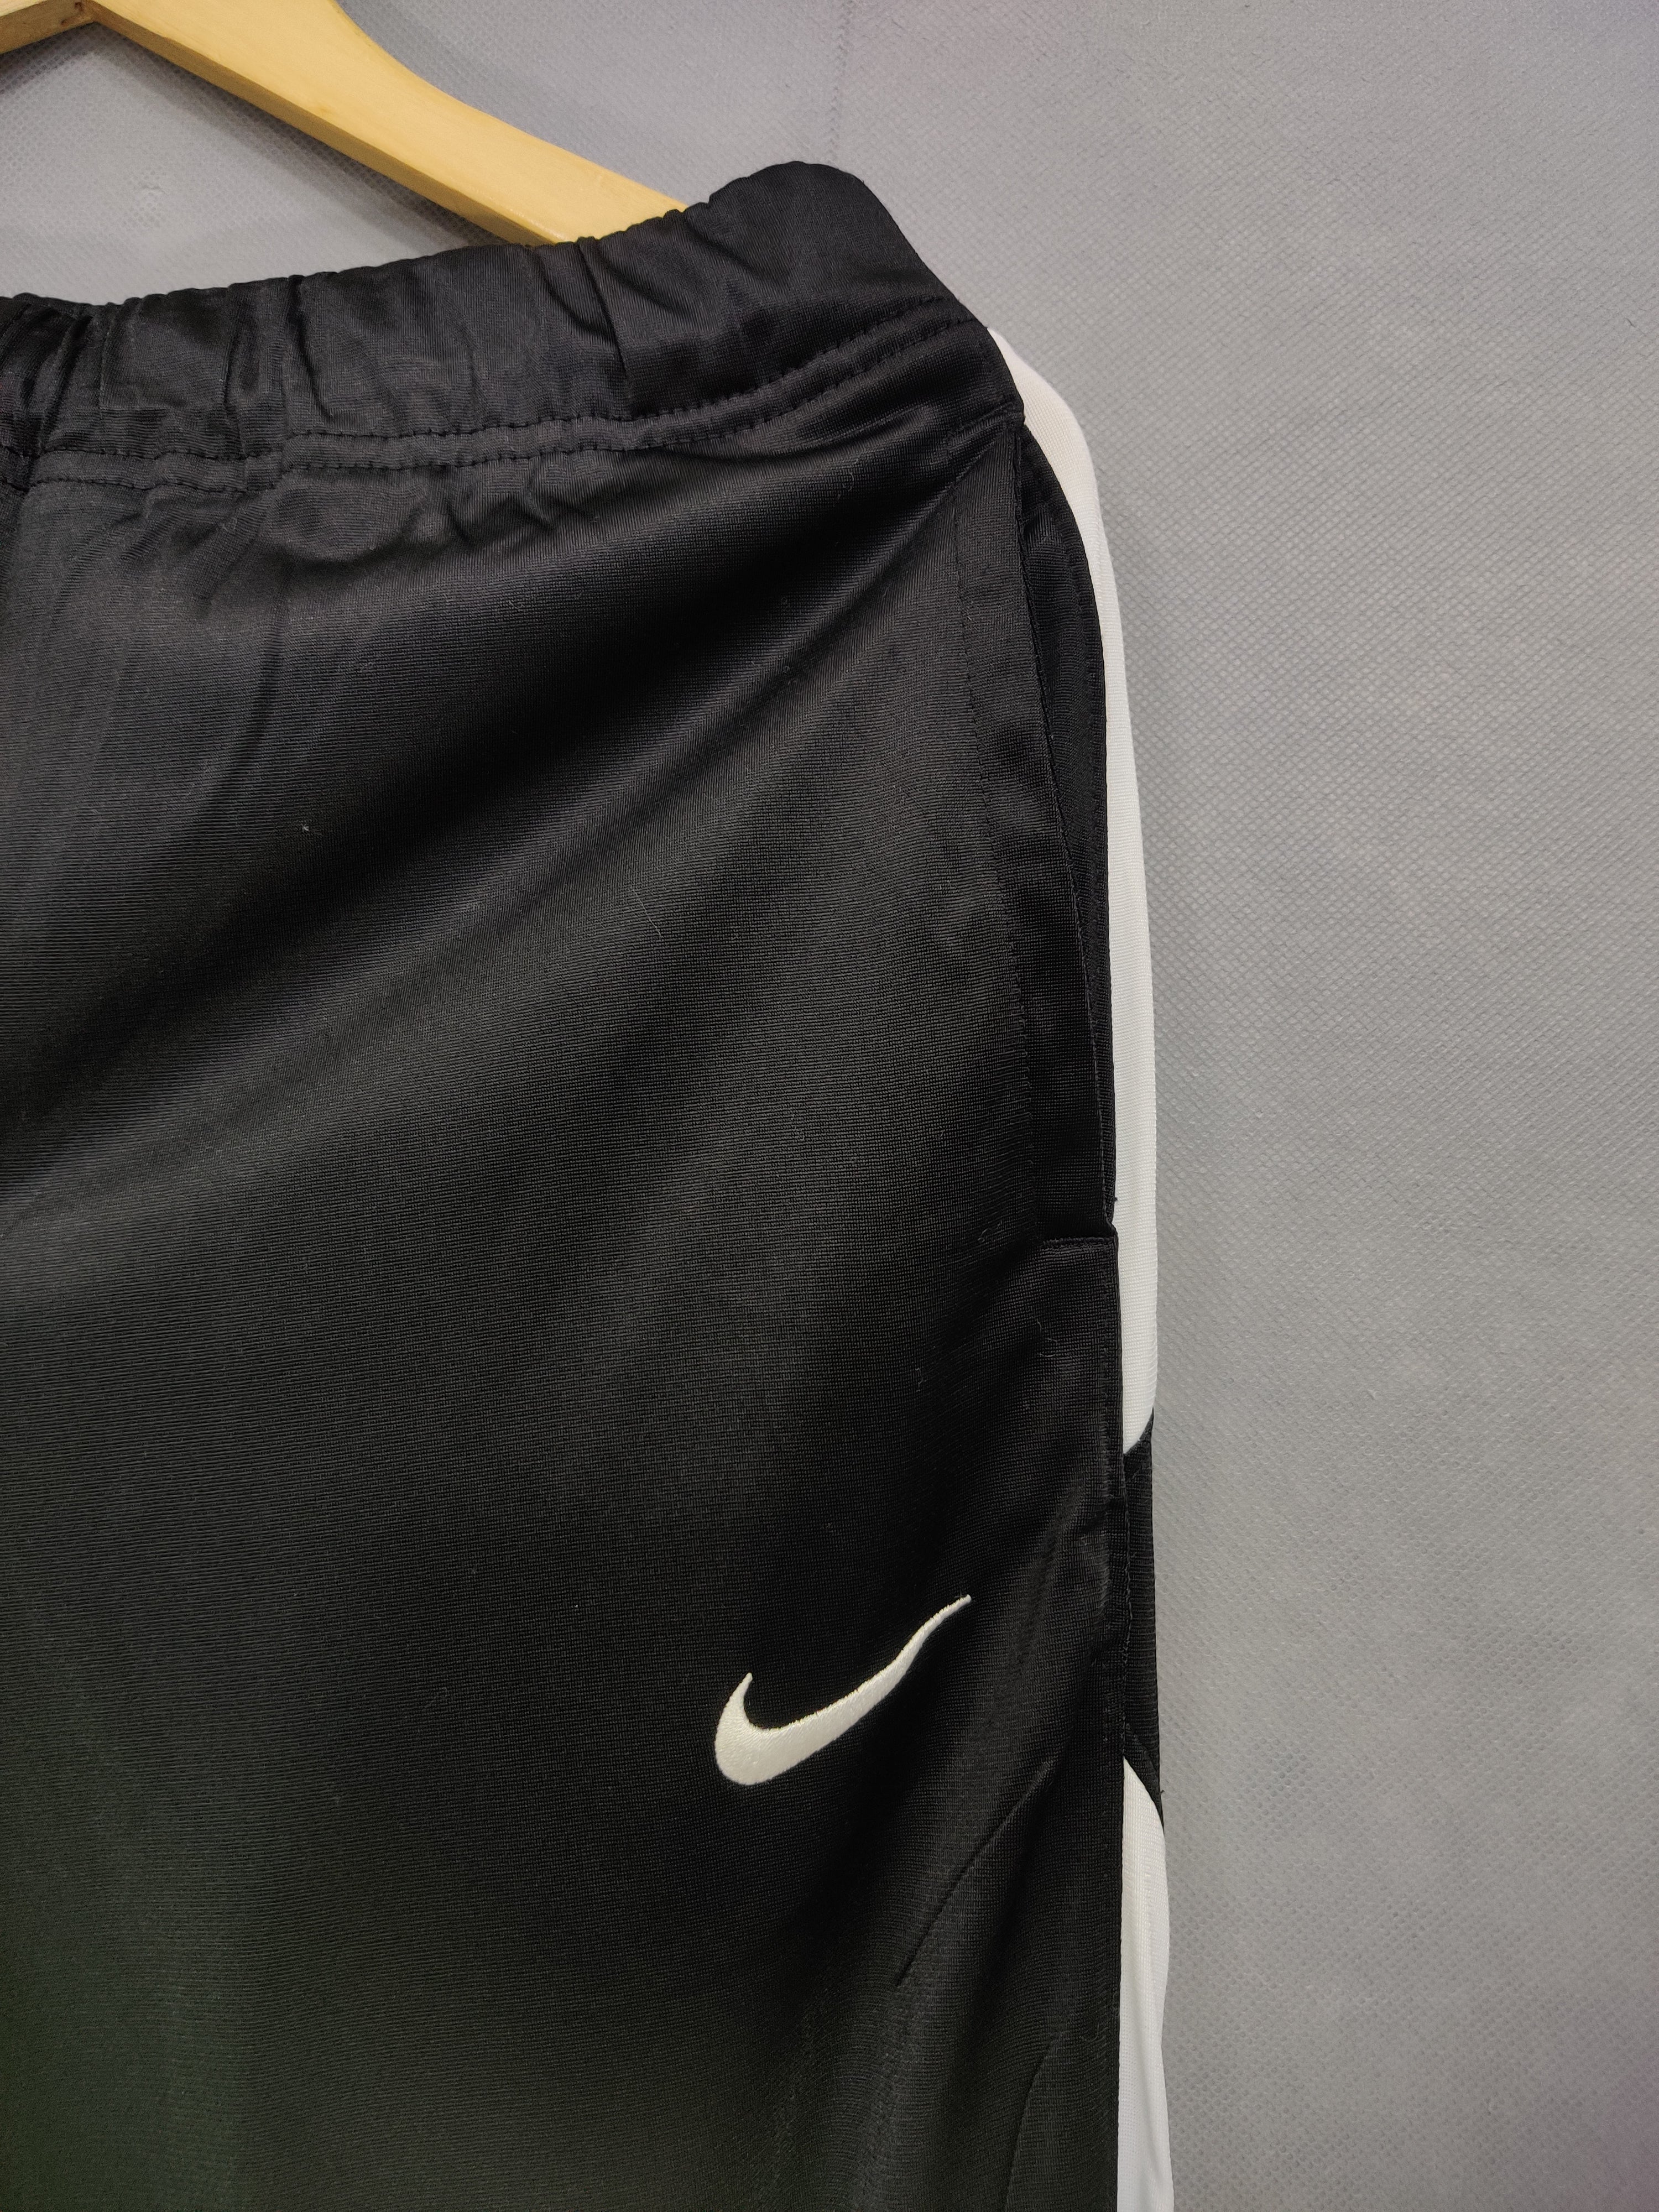 Nike Branded Original Sport Trouser For Women